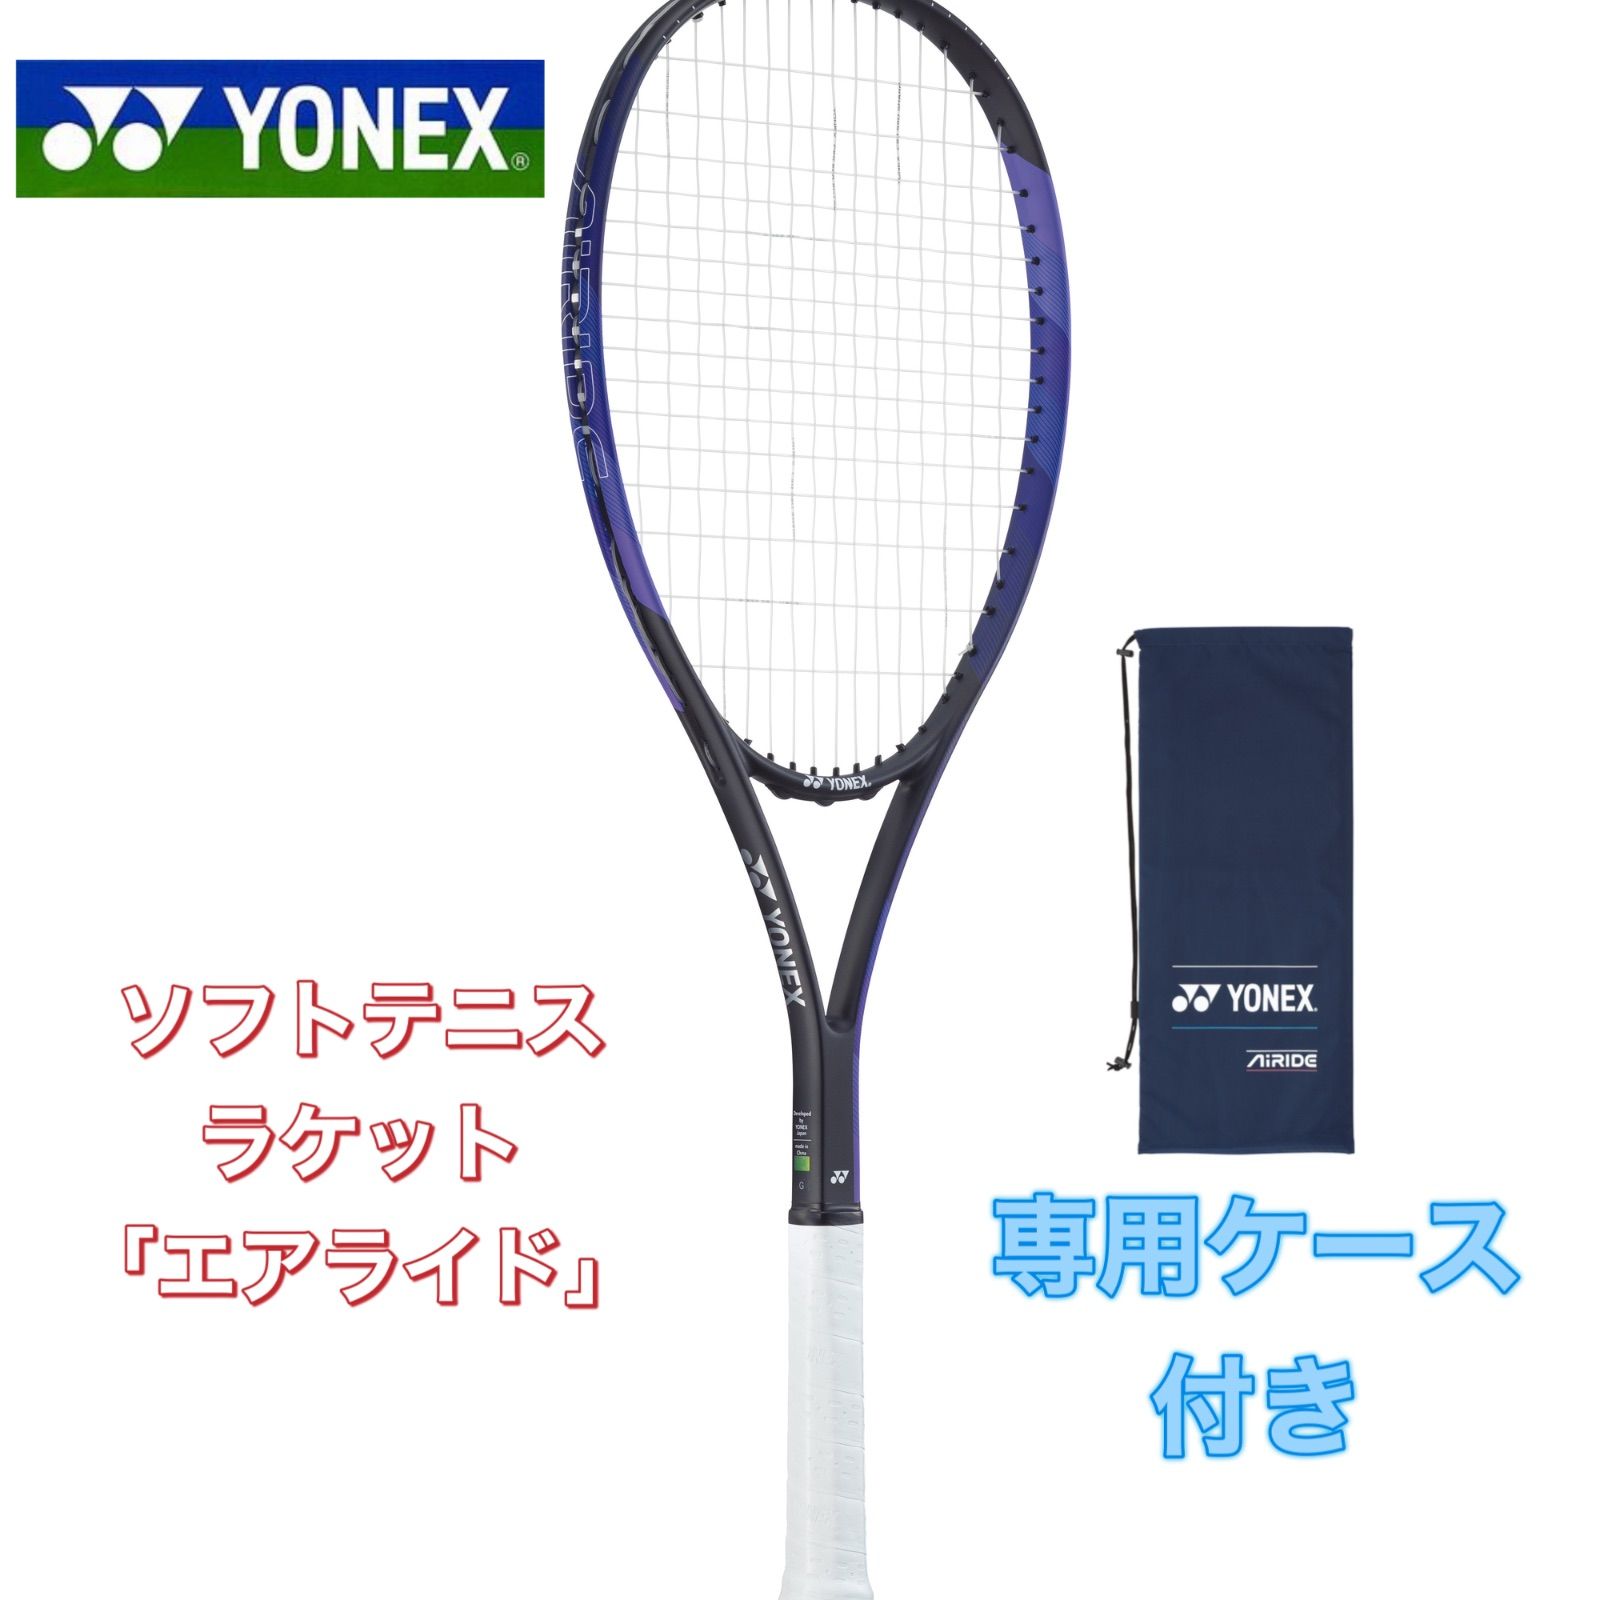 ノベルティ付き 美品！テニス ラケット ヨネックス S-FiT G2 105inch 